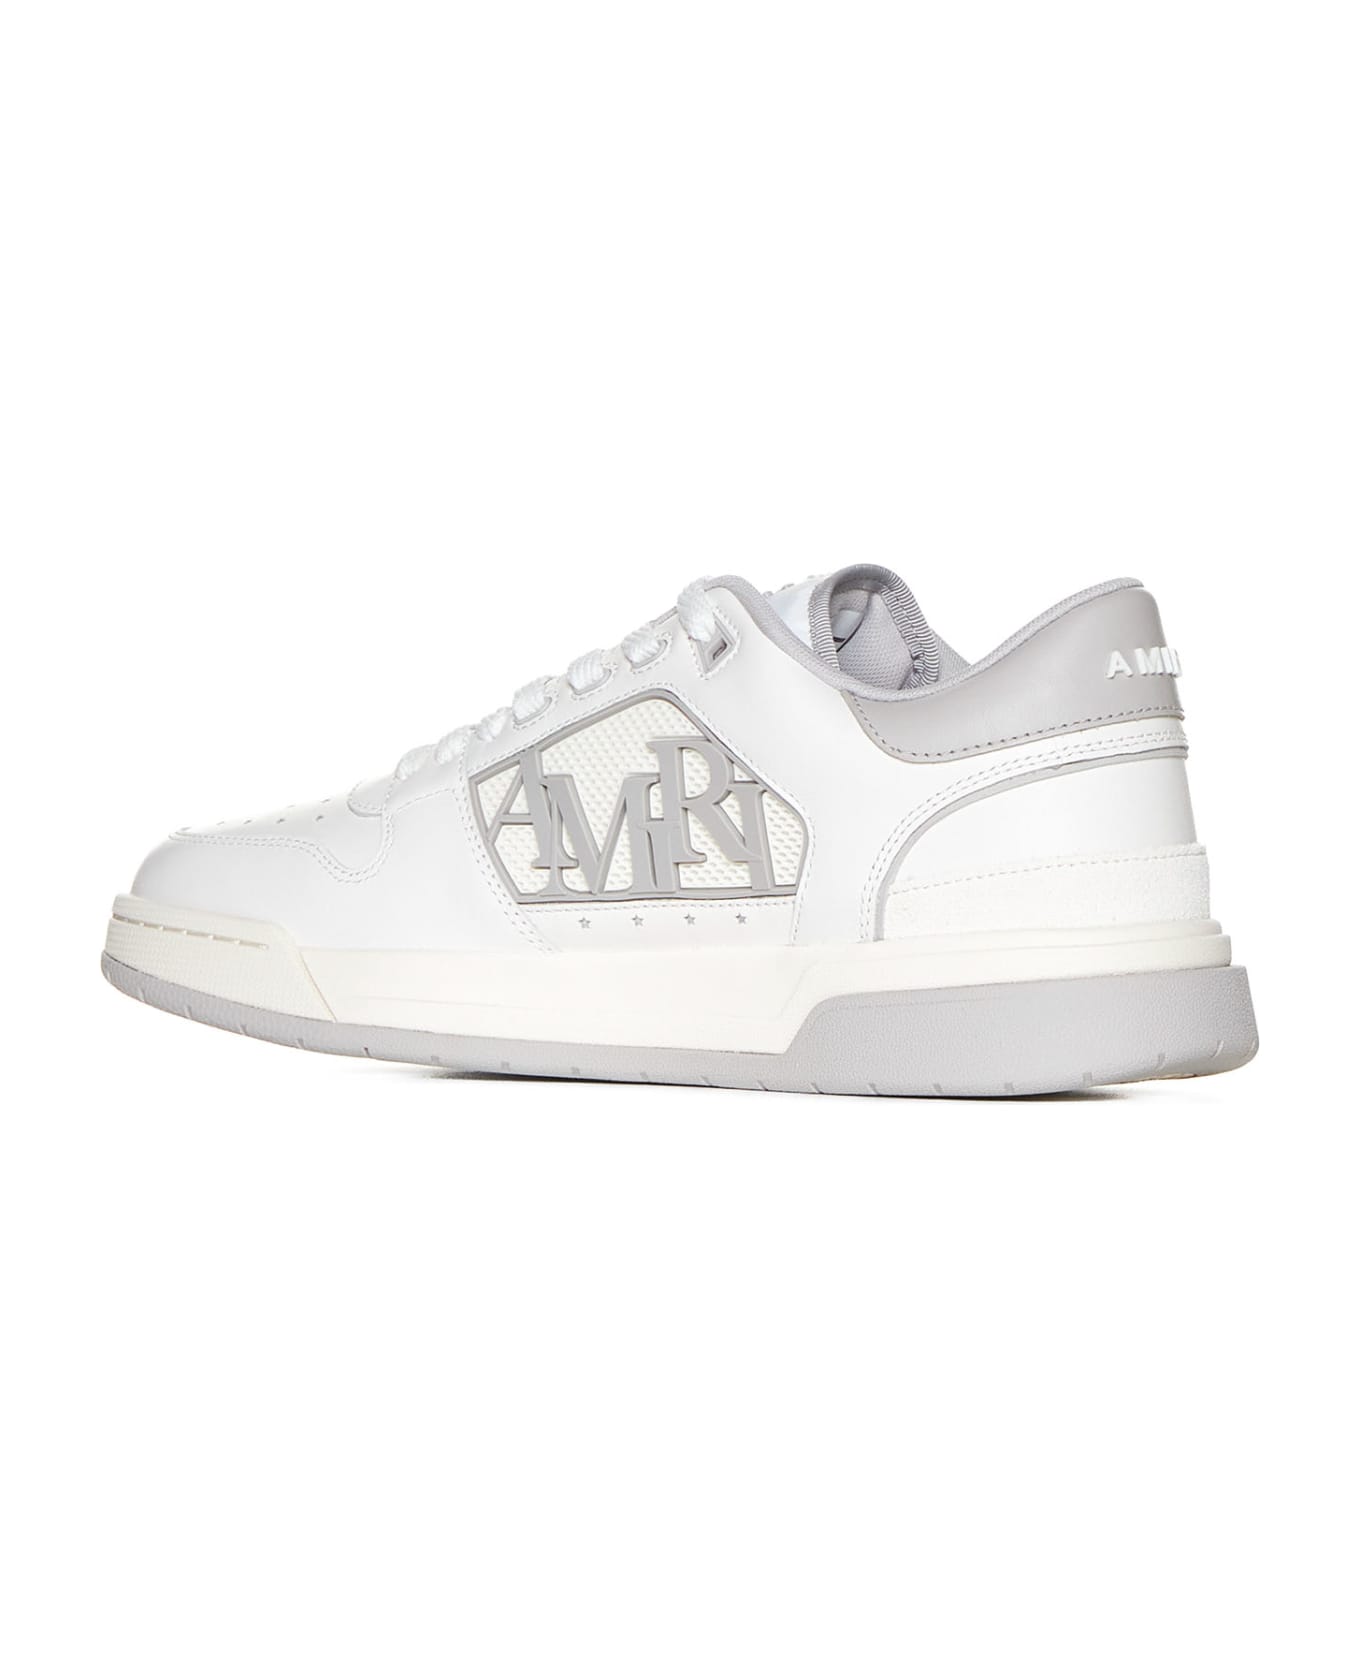 AMIRI Sneakers - White grey